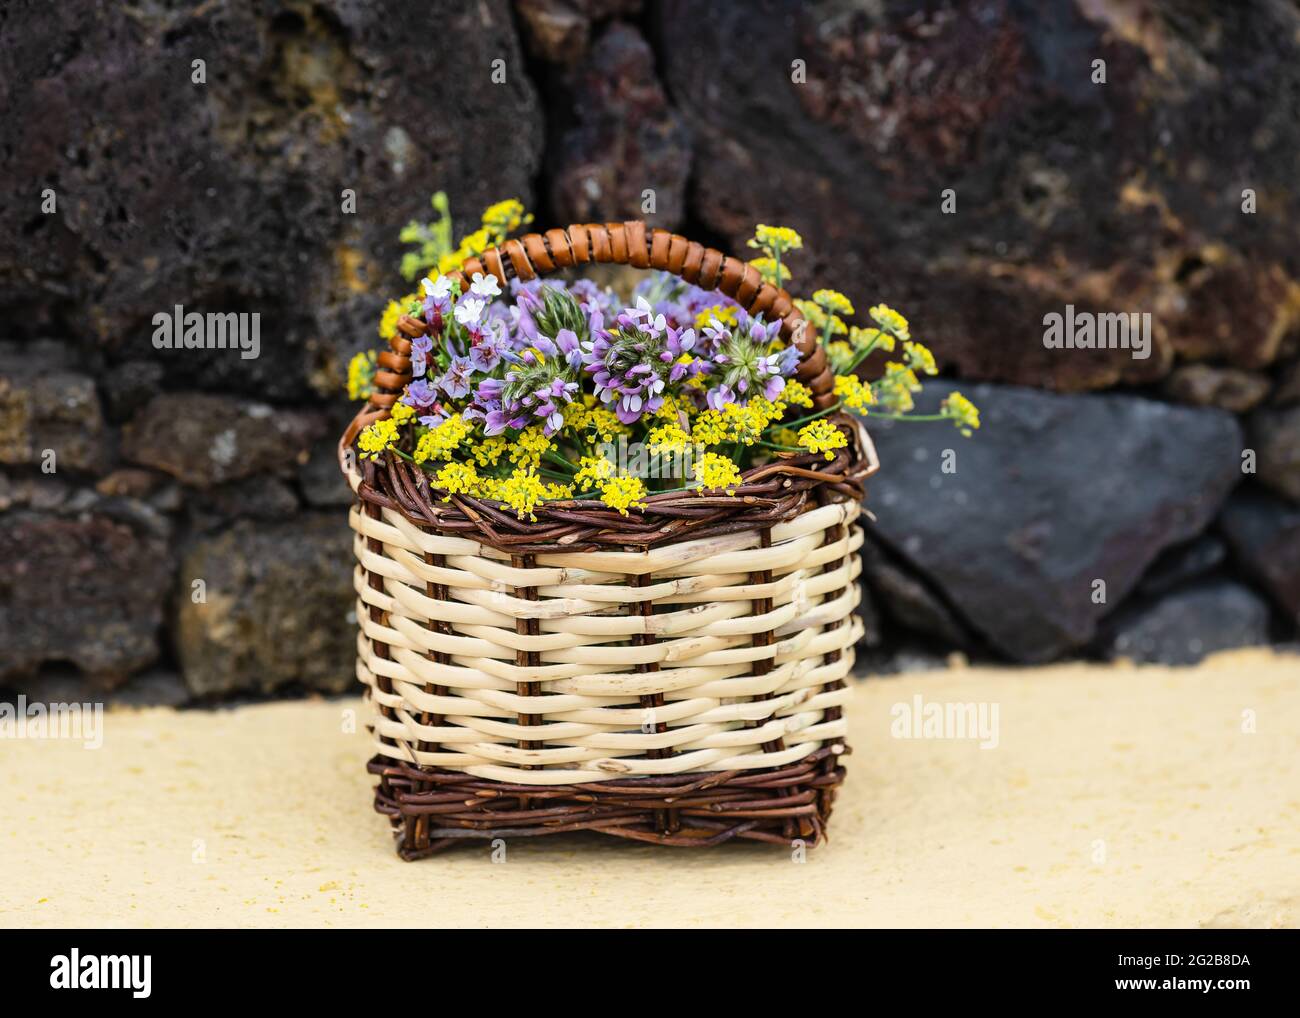 Panier traditionnel en osier canari bouquet de fleurs sauvages colorées. Copier l'espace. Banque D'Images